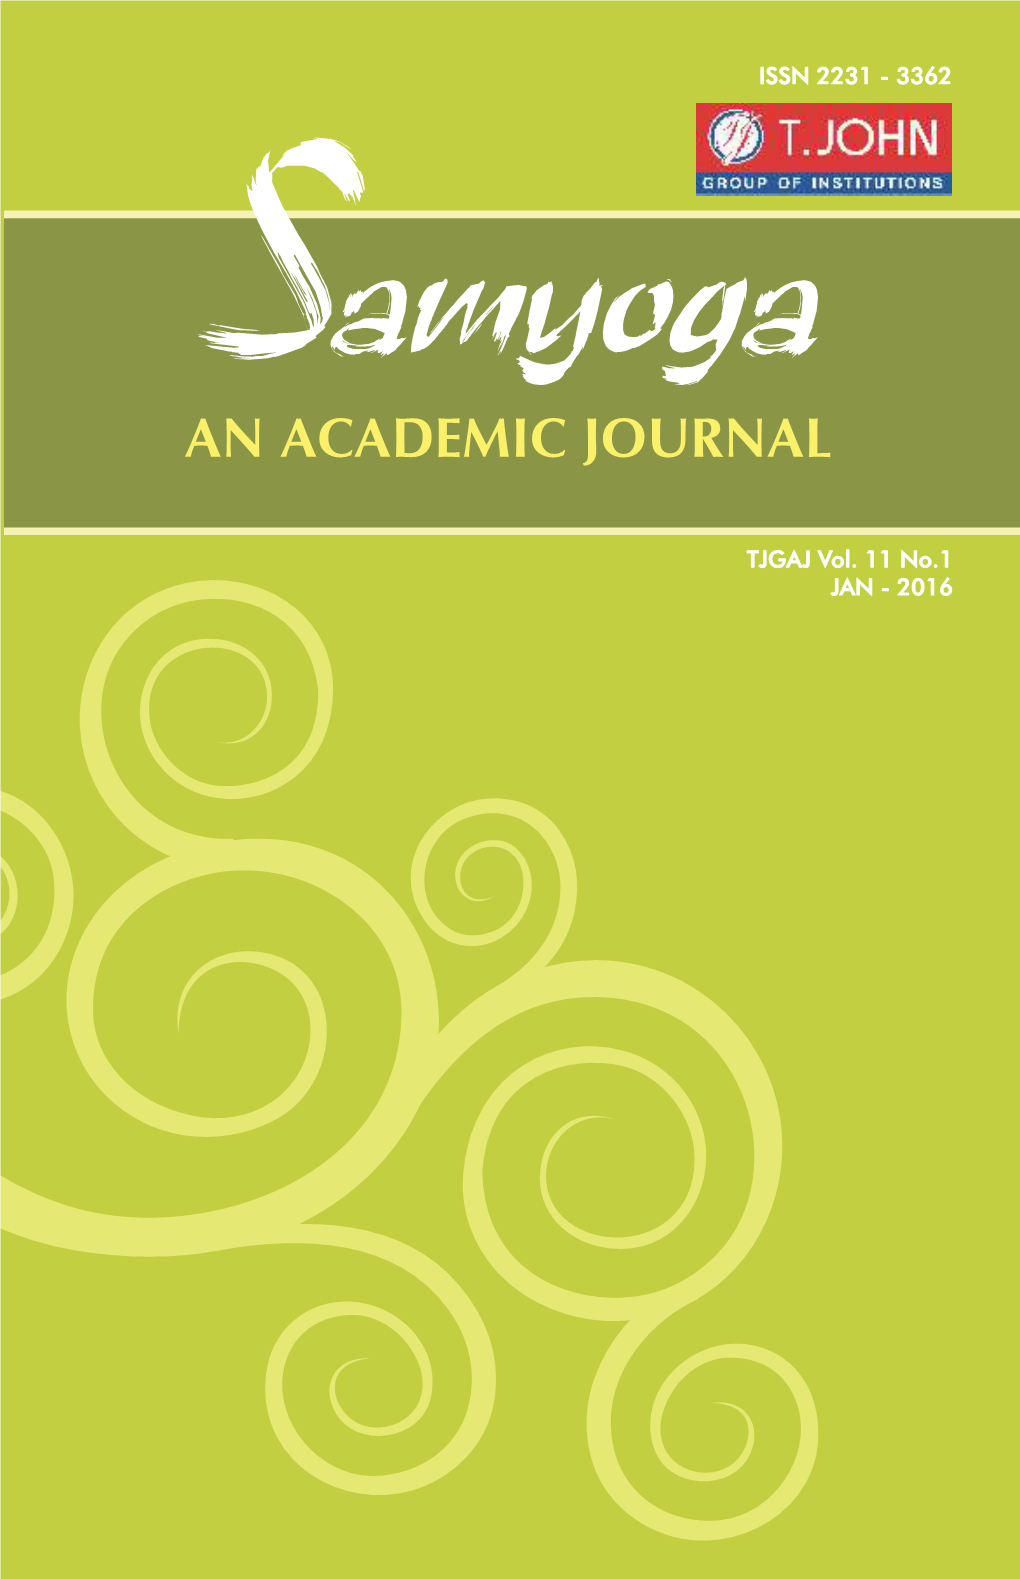 Samyoga ISSN 2231 - 3362 an ACADEMIC JOURNAL